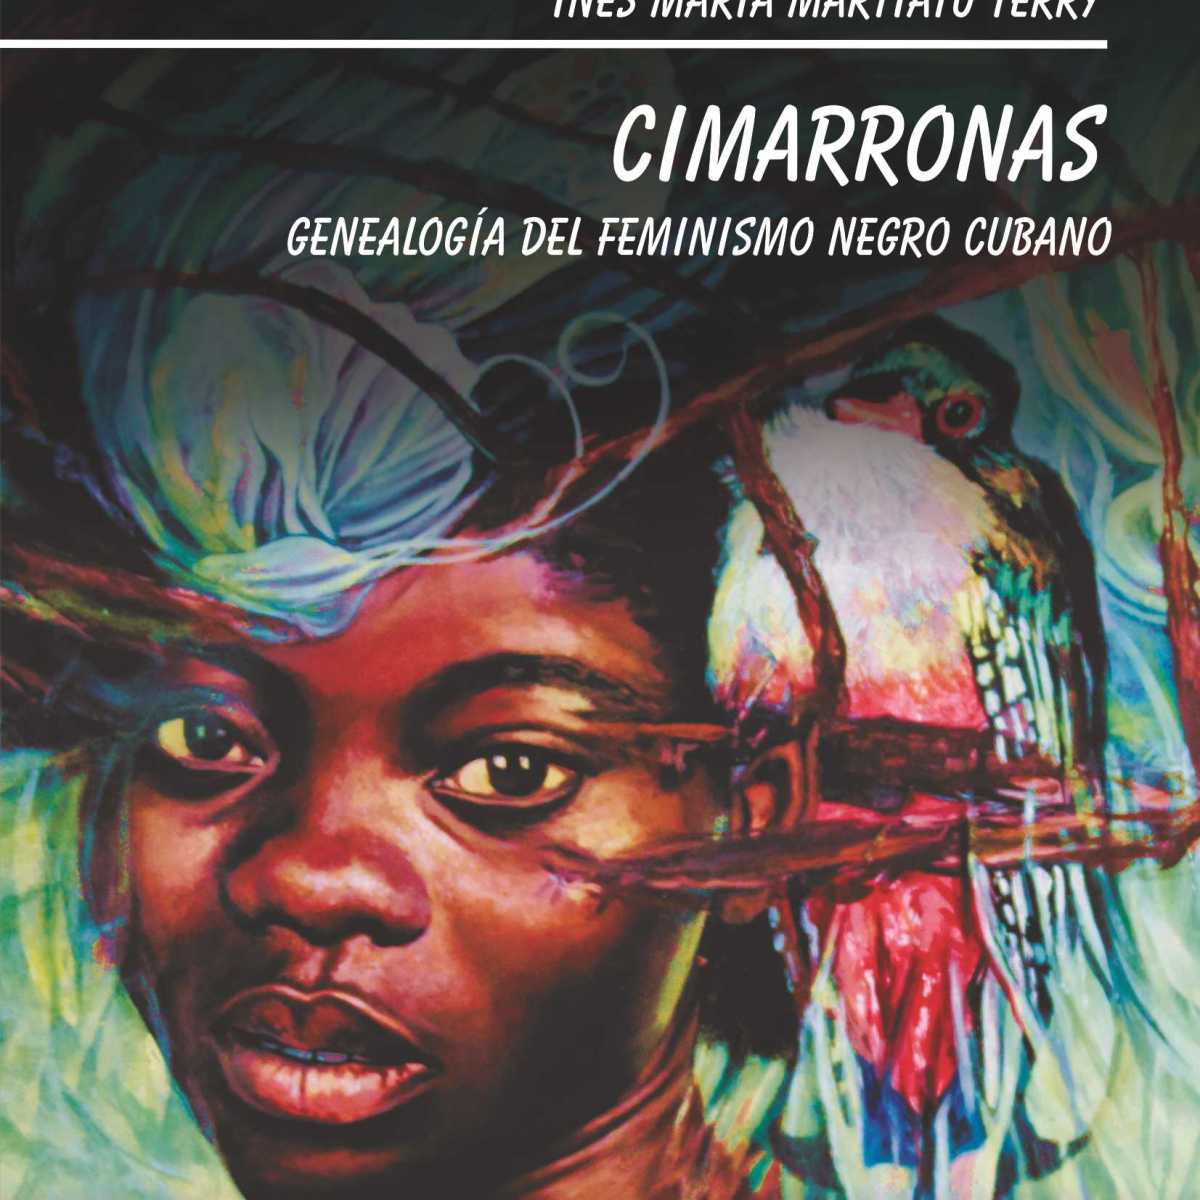 Fragmentos del prólogo a: CIMARRONAS. GENEALOGÍA DEL FEMINISMO NEGRO CUBANO de próxima aparición por la Editorial Oriente. Por Alberto Abreu Arcia